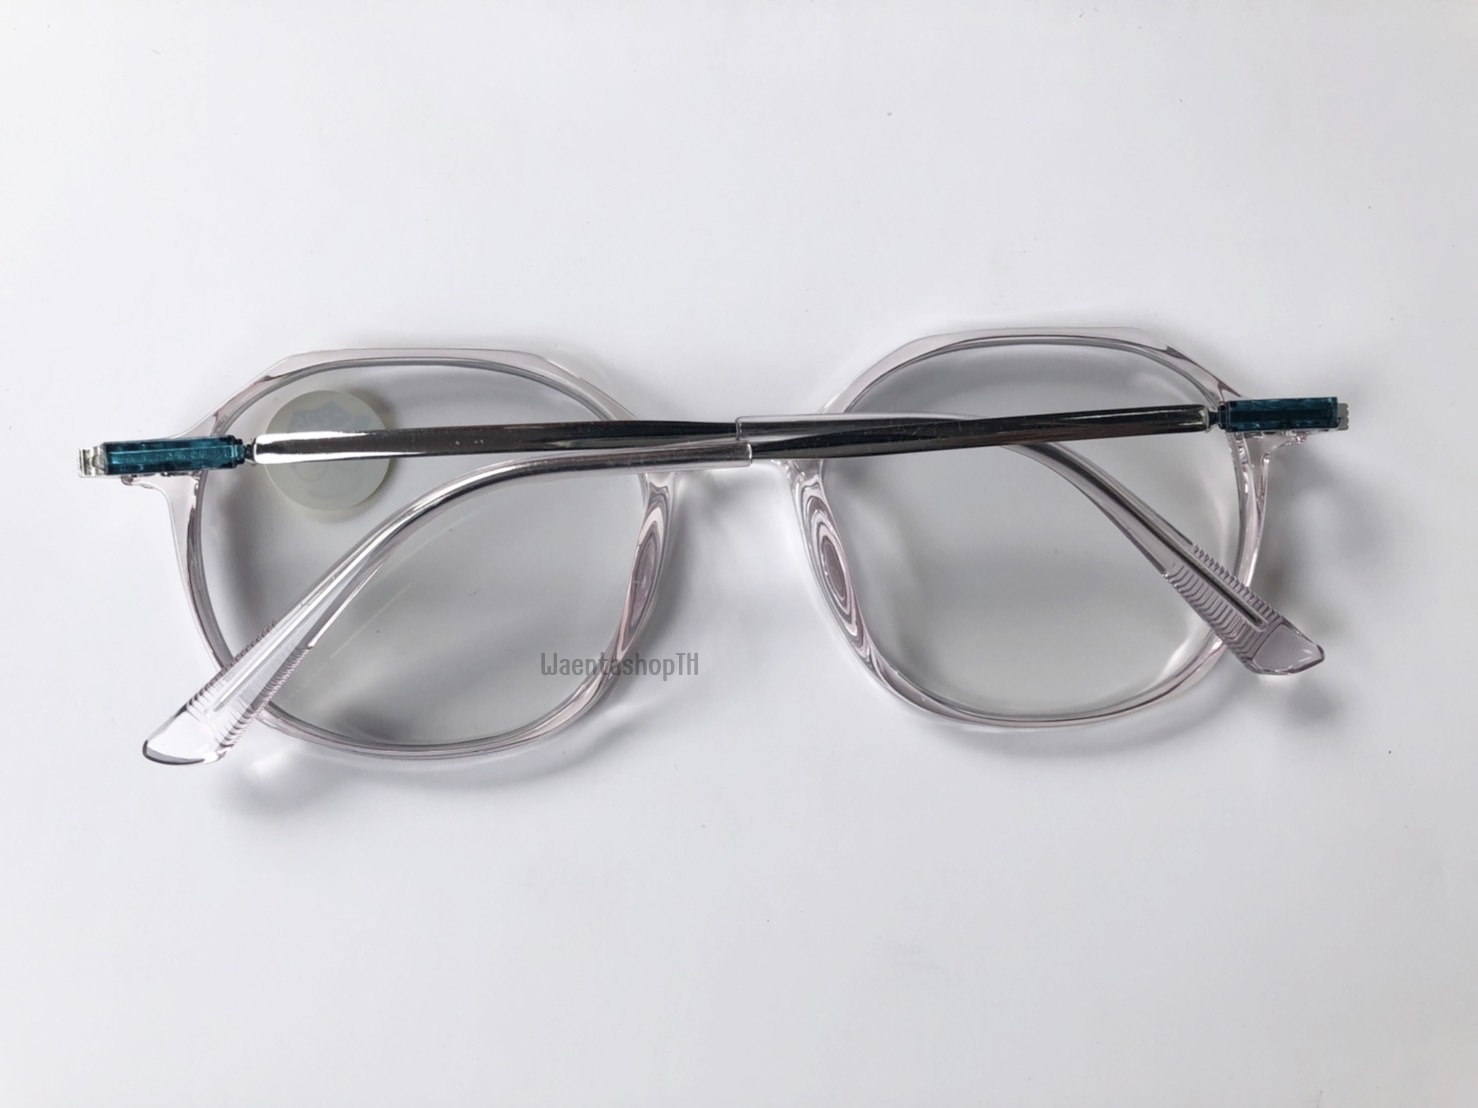 ข้อมูลเกี่ยวกับ แว่นสายตาสั้น / สายตายาว เลนส์มัลติโค้ด ออกแดดเปลี่ยนสี ออโต้ แว่น แว่นตา แว่นสายตา สายตายาว